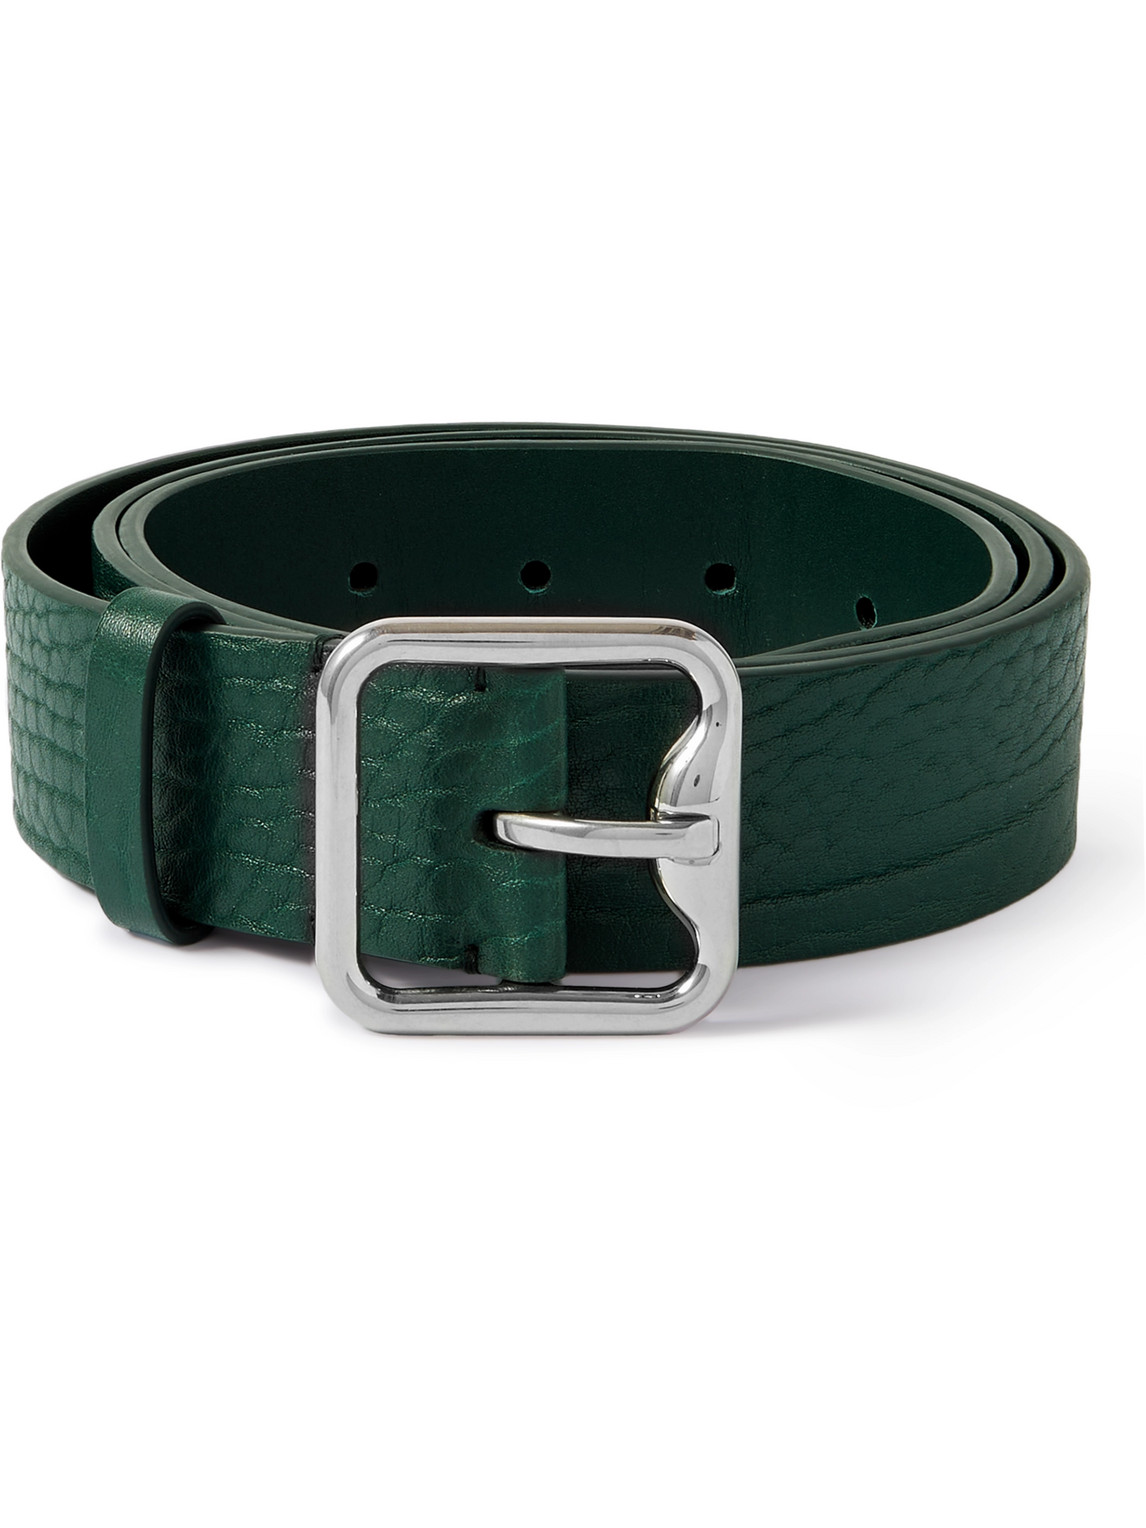 Burberry 3.5cm Full-grain Leather Belt In Green